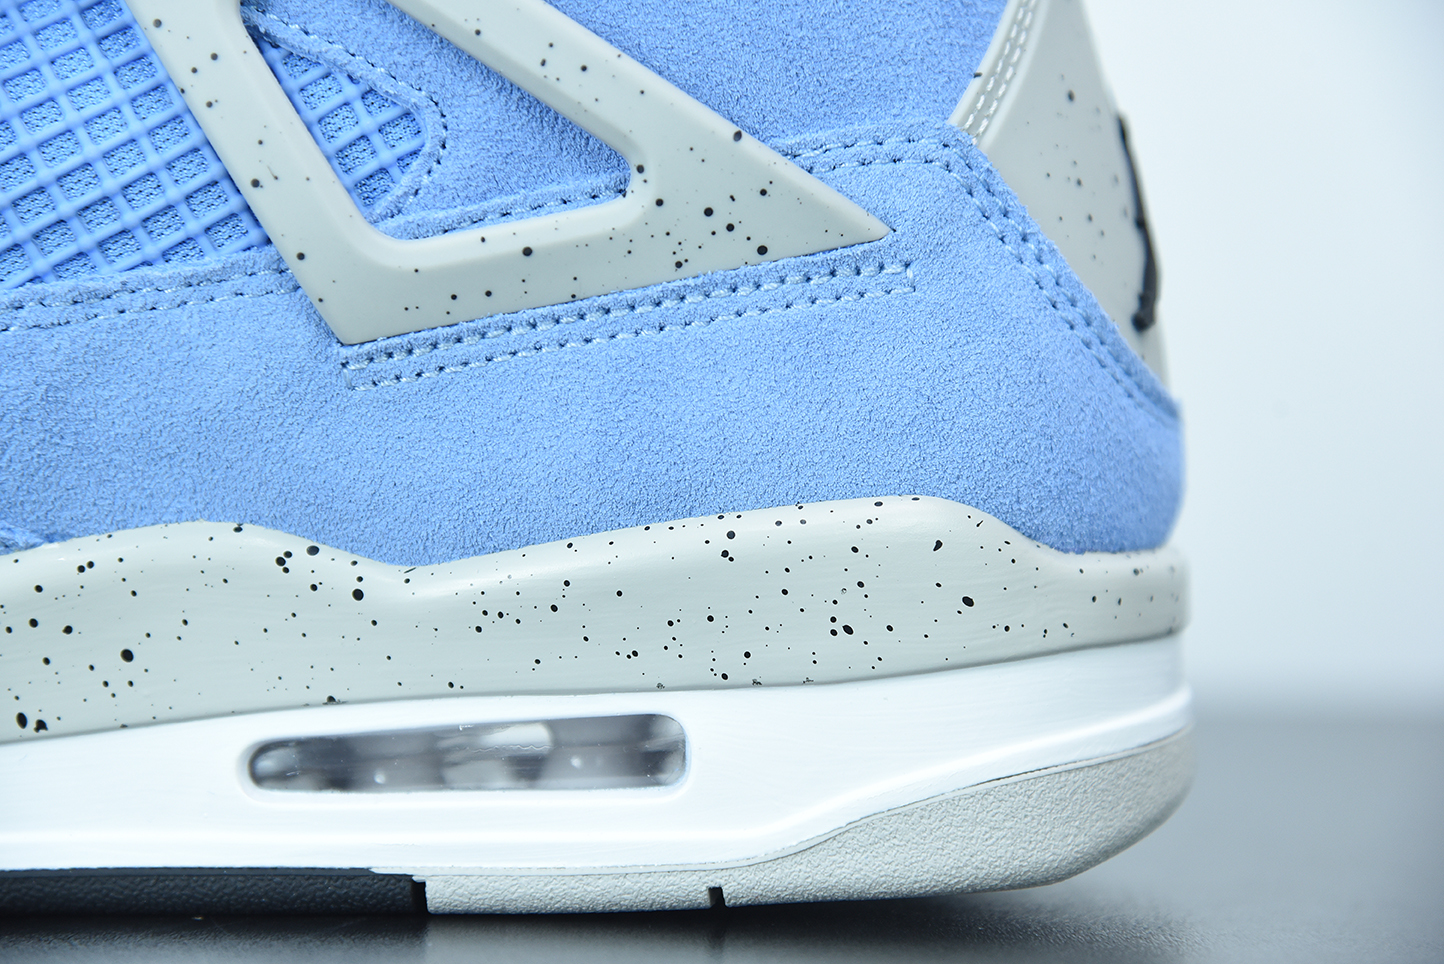 💖Buy 1 PK Sneakers to get this Pair $59.9💖 G5 Jordan 4 Retro University Blue,CT8527-400